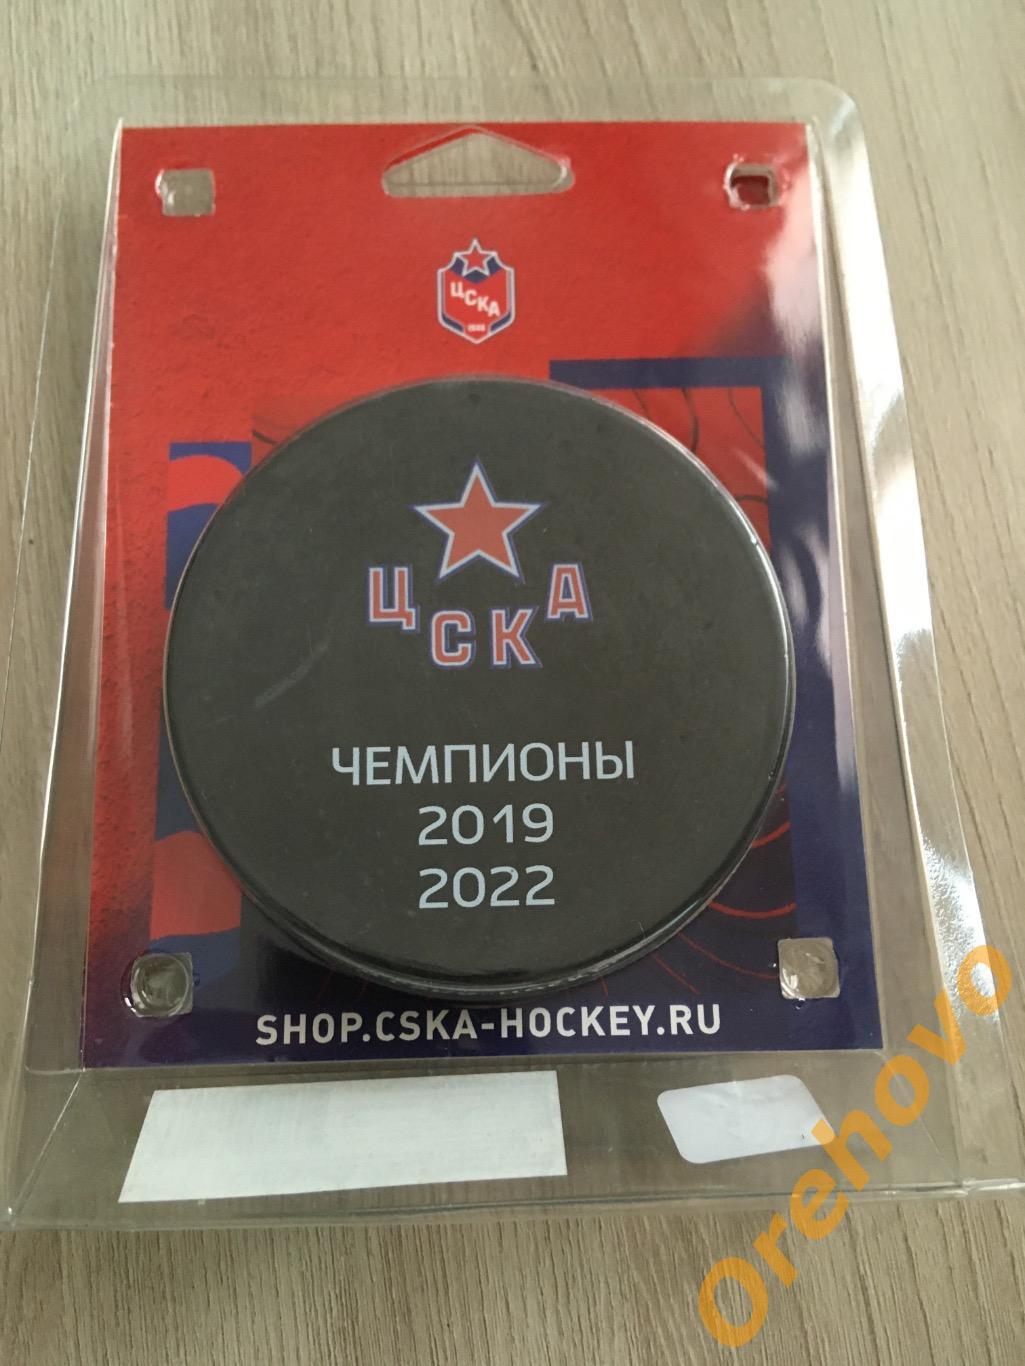 Шайба КХЛ ЦСКА Чемпионы 2019 2022 официальная (сувенир)